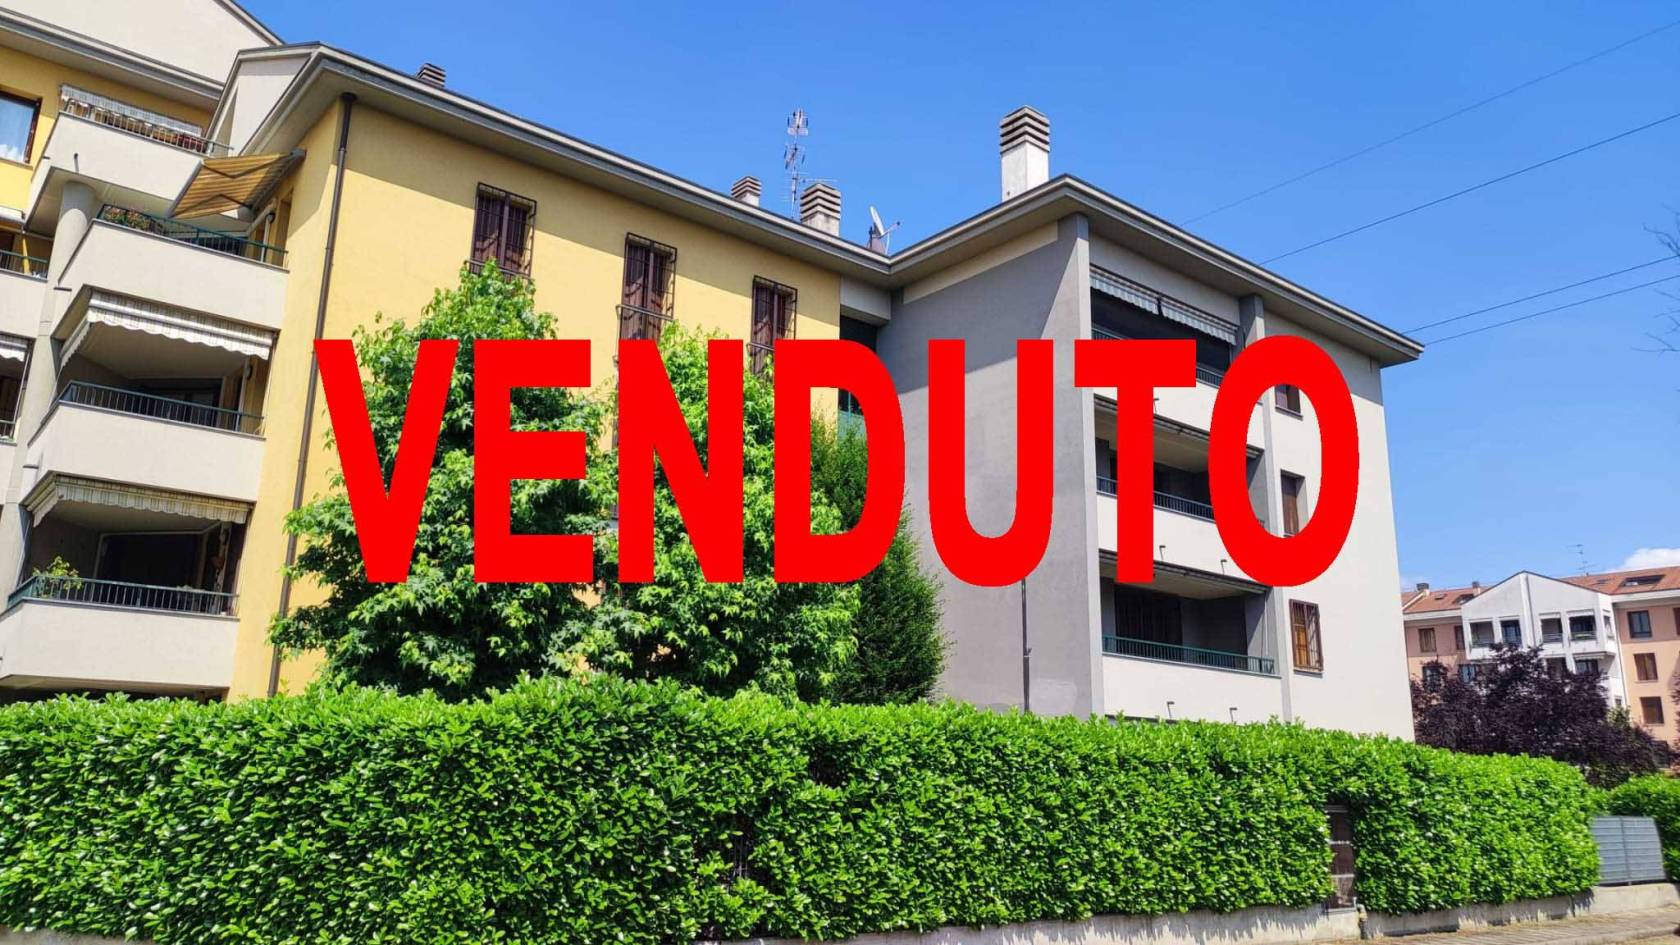 Brugherio, Zona Torazza, in via Monte Cervino, proponiamo in vendita luminoso 3 locali con doppi servizi, cucina abitabile e ripostiglio. La zona 